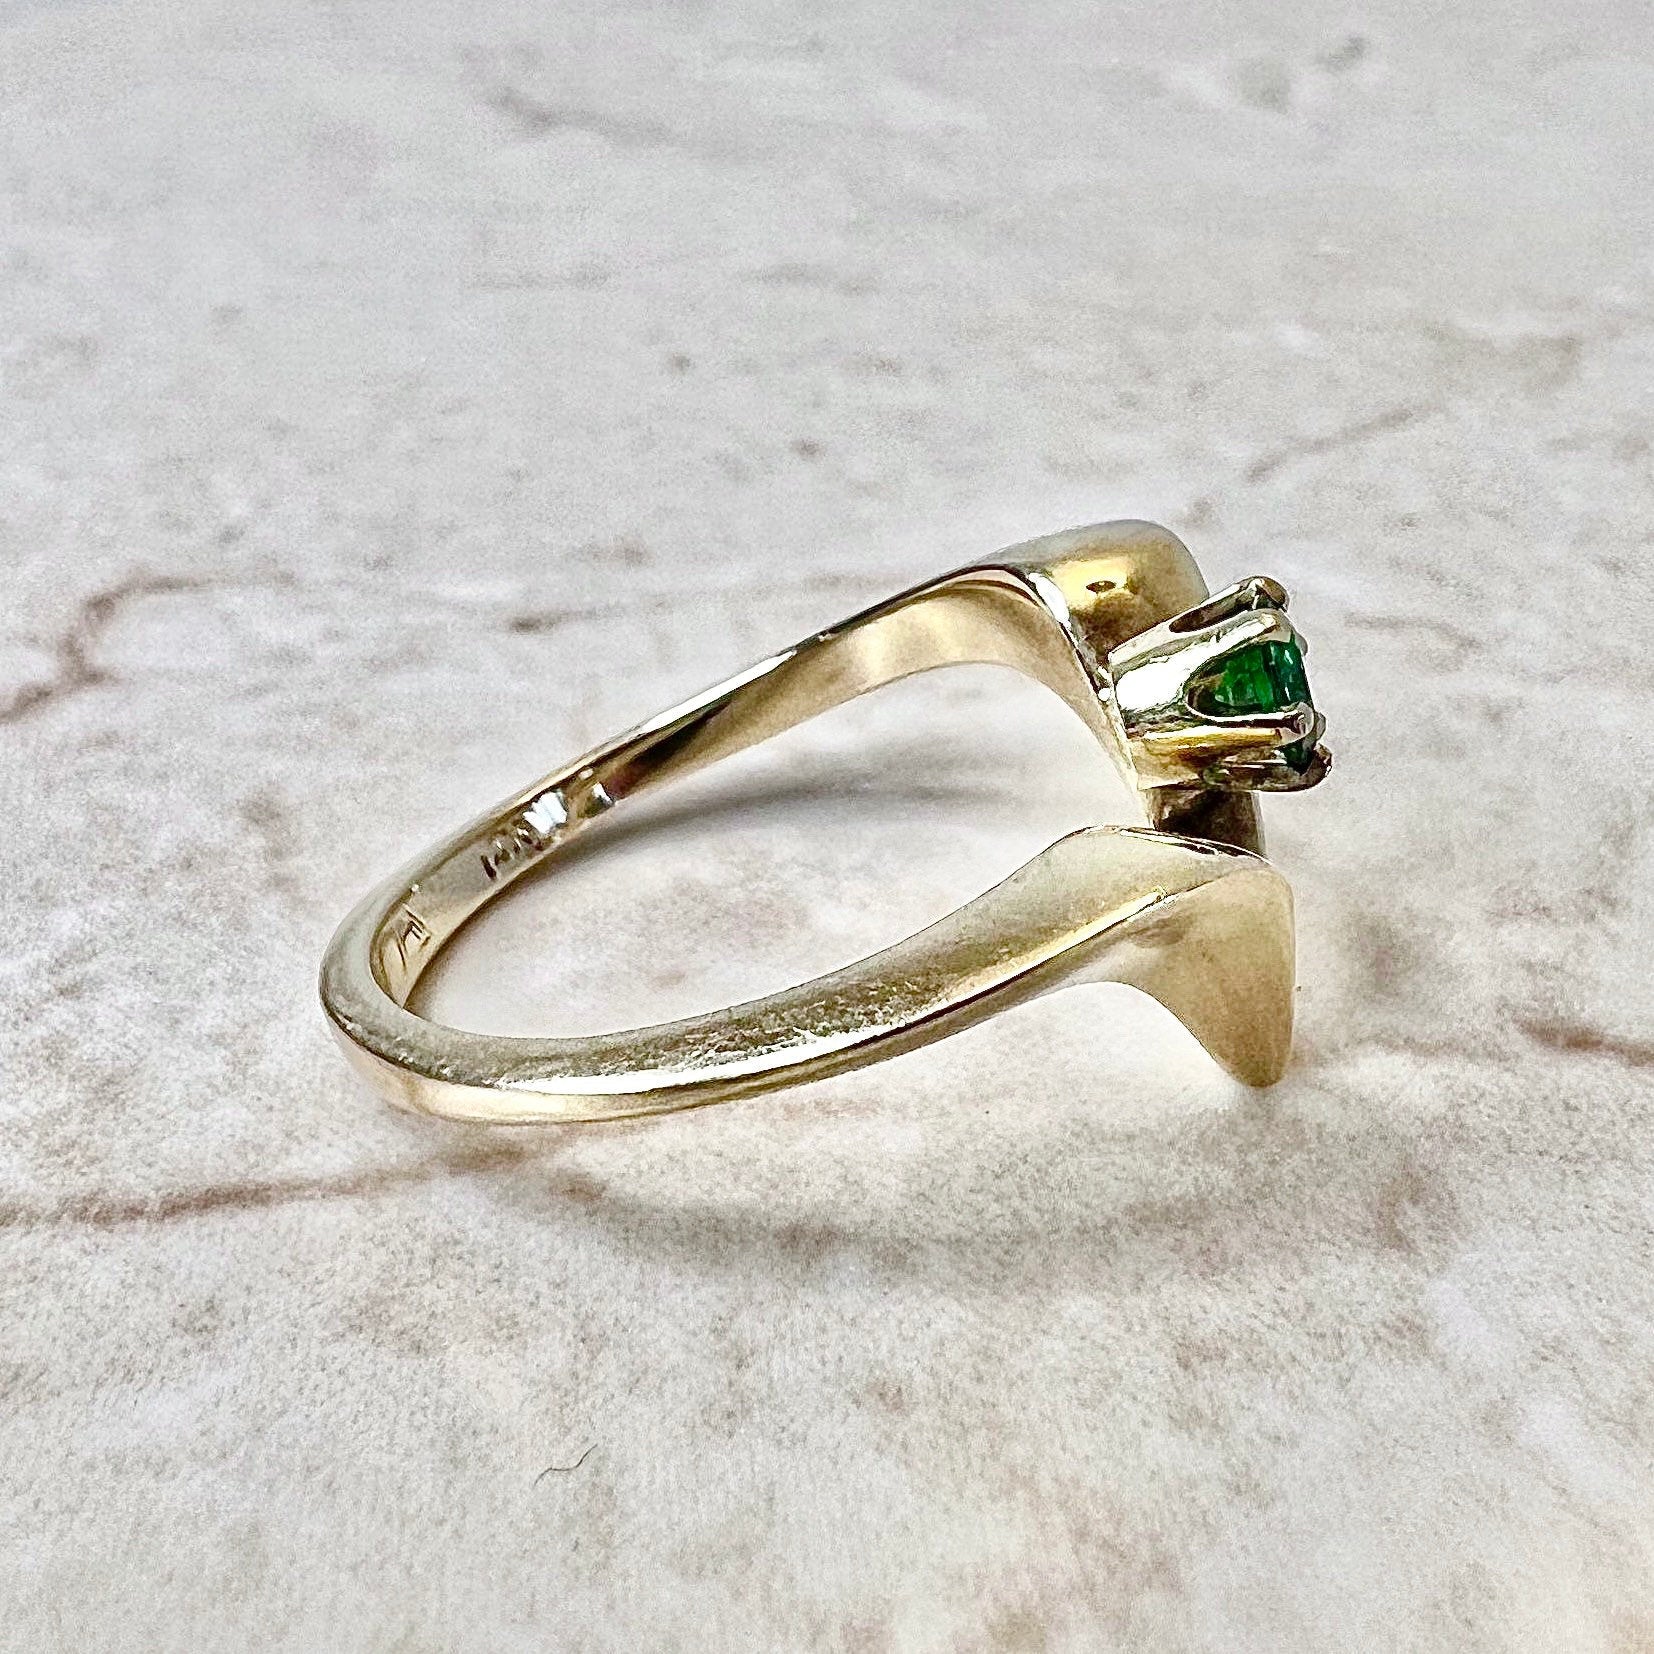 Vintage 14K Natural Tsavorite Garnet Solitaire Ring - V Shape Yellow Gold Cocktail Ring - Promise Ring - Birthday Gift - Best Gift For Her